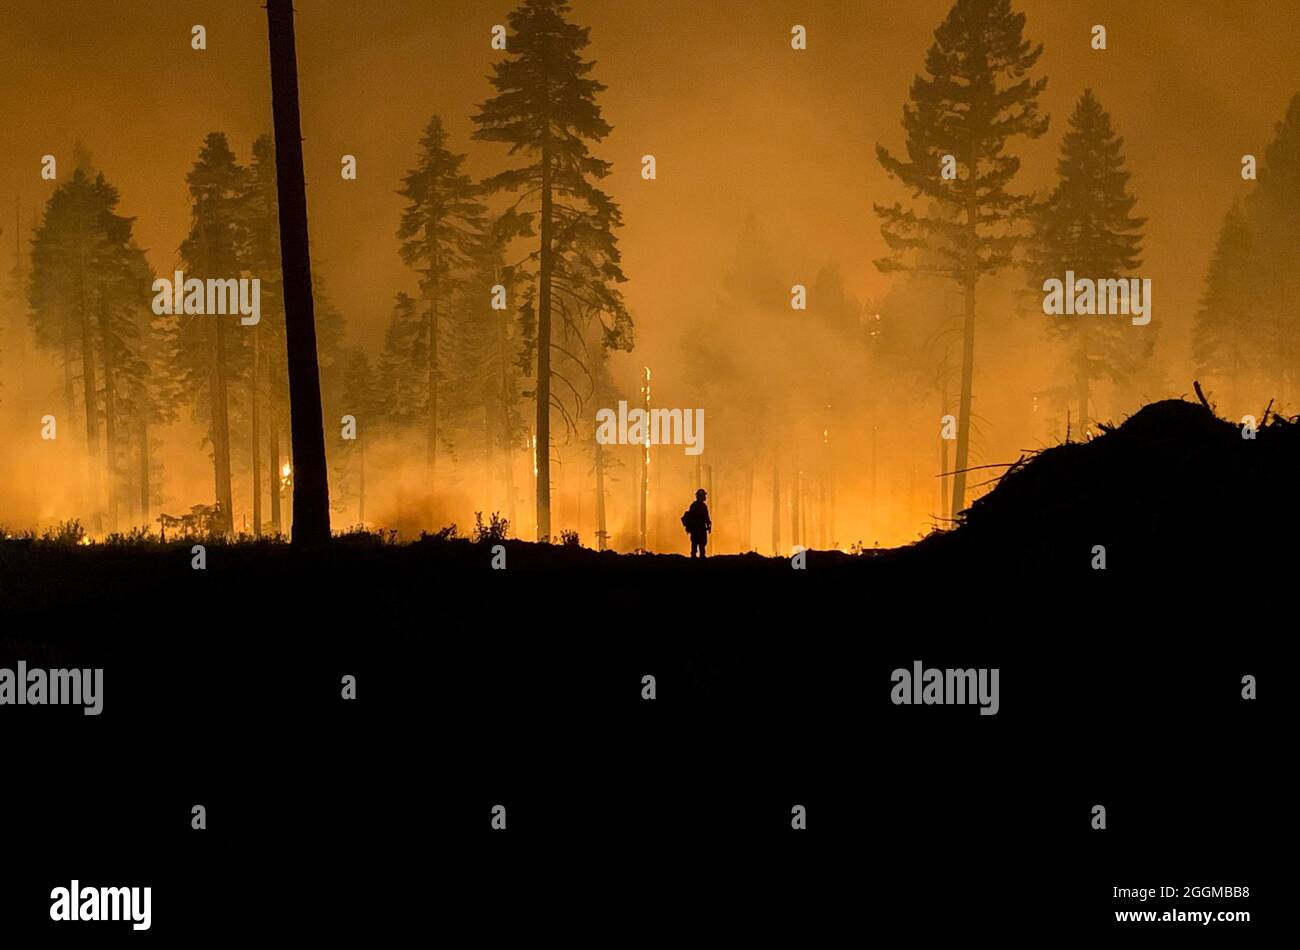 Feuerwehrmann, der nachts eine Feueraktion durchführt das Dixie Fire ist ein Waldfeuer, das Greenville, Kalifornien, zu Boden verbrannte und bis Ende August 2021 in den kalifornischen Grafschaften Butte, Plumas und Tehama 844,082 Hektar Land verbrannt hat. Der Brand, der am 13. Juli 2021 begann, ist der größte aufgezeichnete Brandkomplex in der Geschichte Kaliforniens. Die Dürrebedingungen in Kalifornien haben die Feuersaison 2021 extrem gemacht. Stockfoto